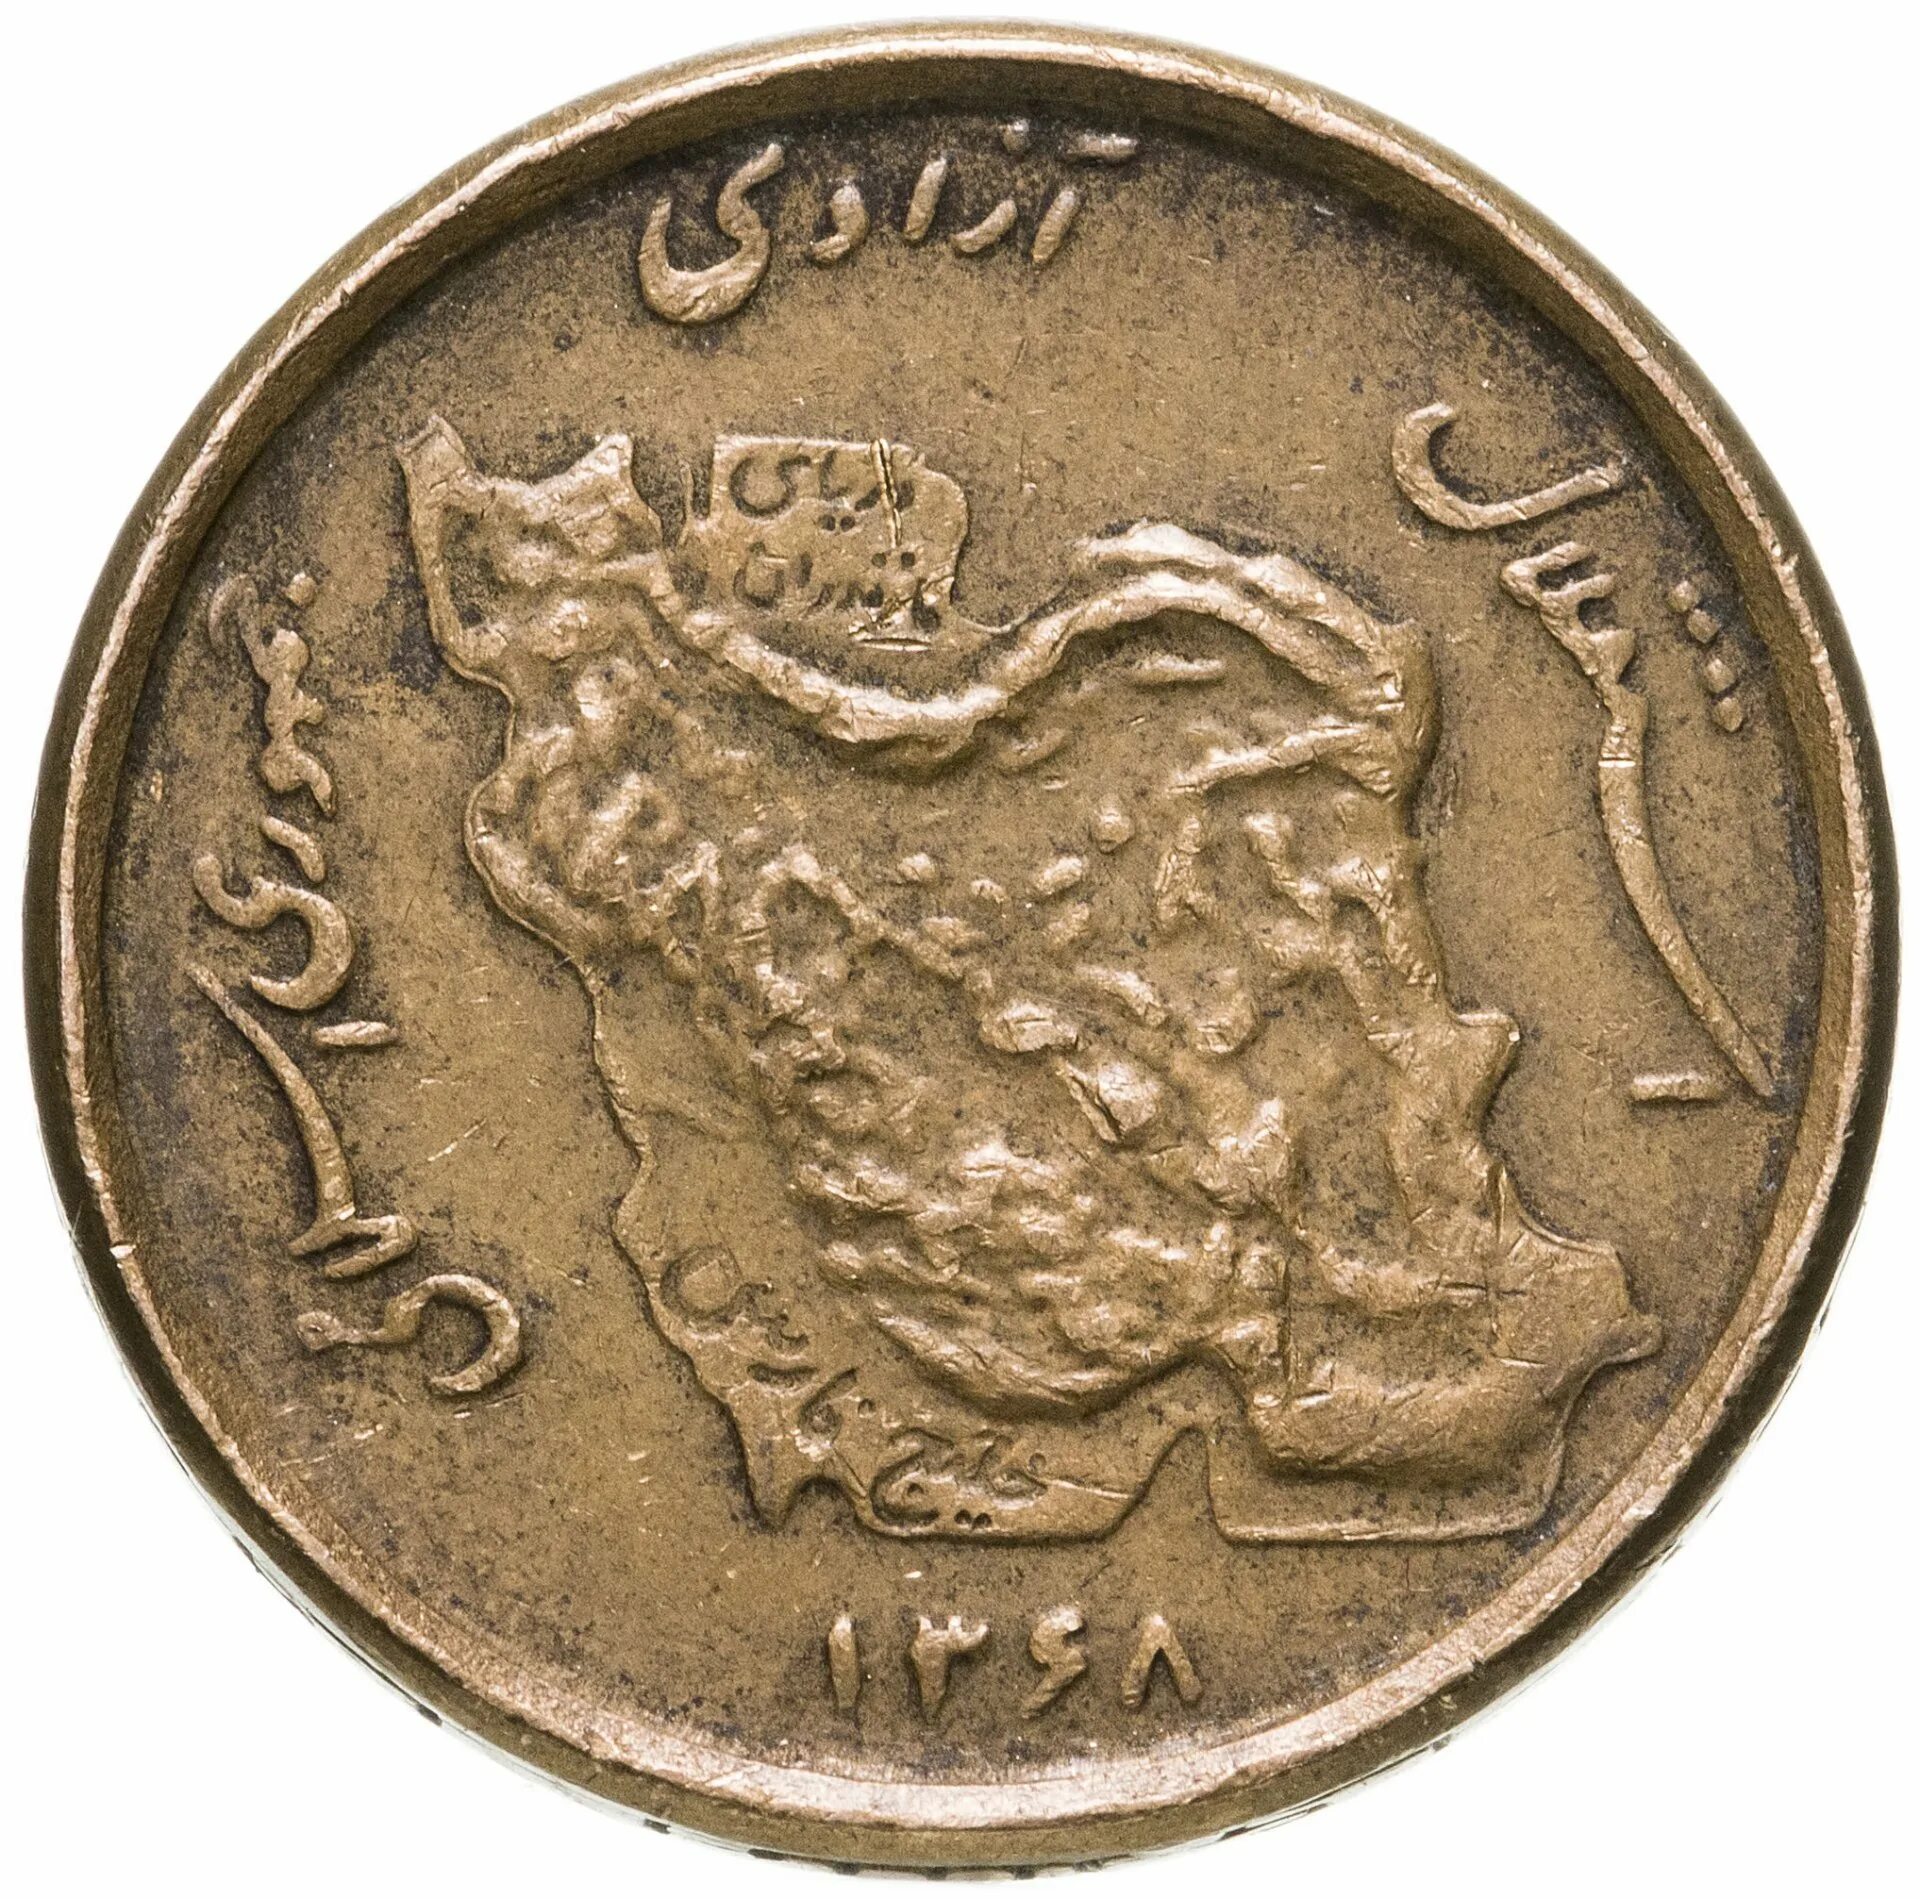 50 Риалов Иран. Монета Иран 50 риалов. Иранский риал монеты. А-50 Иран.